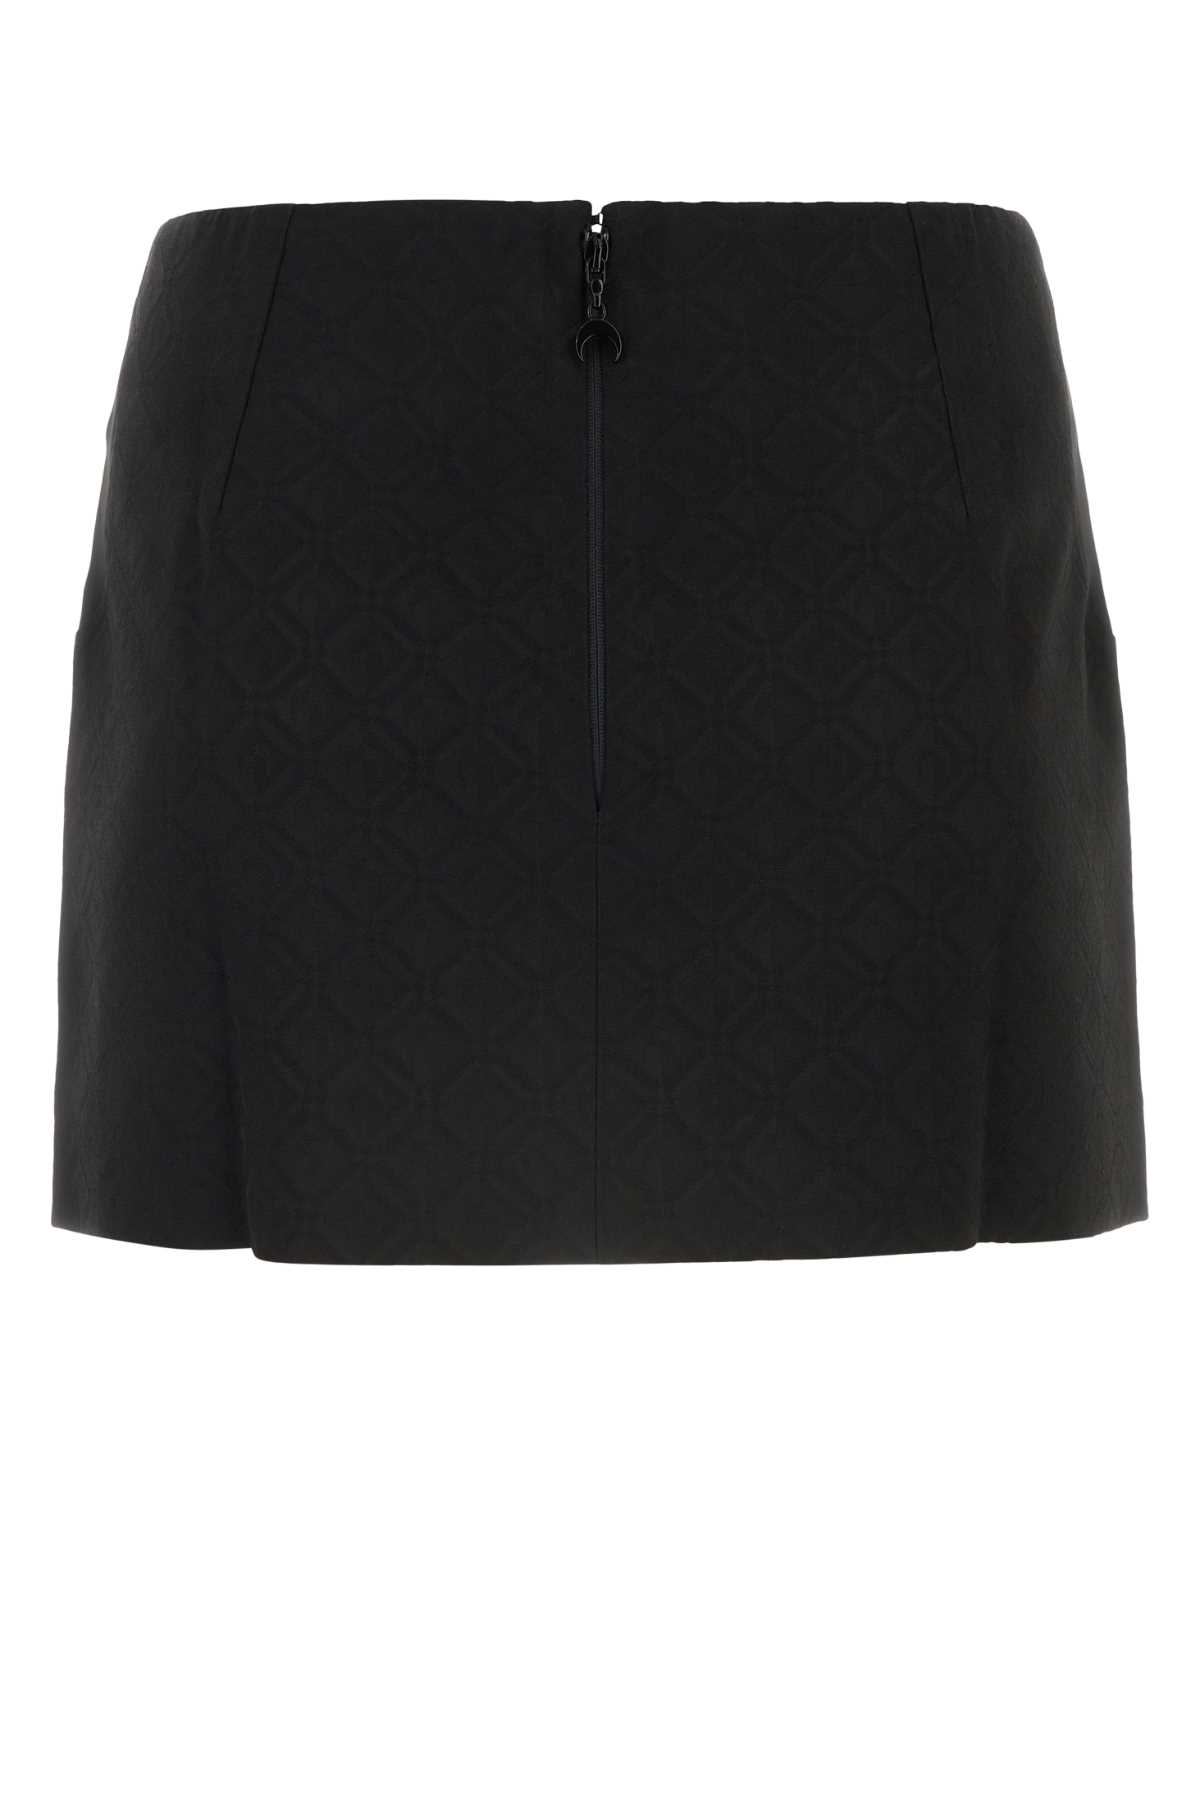 Shop Marine Serre Black Stretch Viscose Blend Mini Skirt